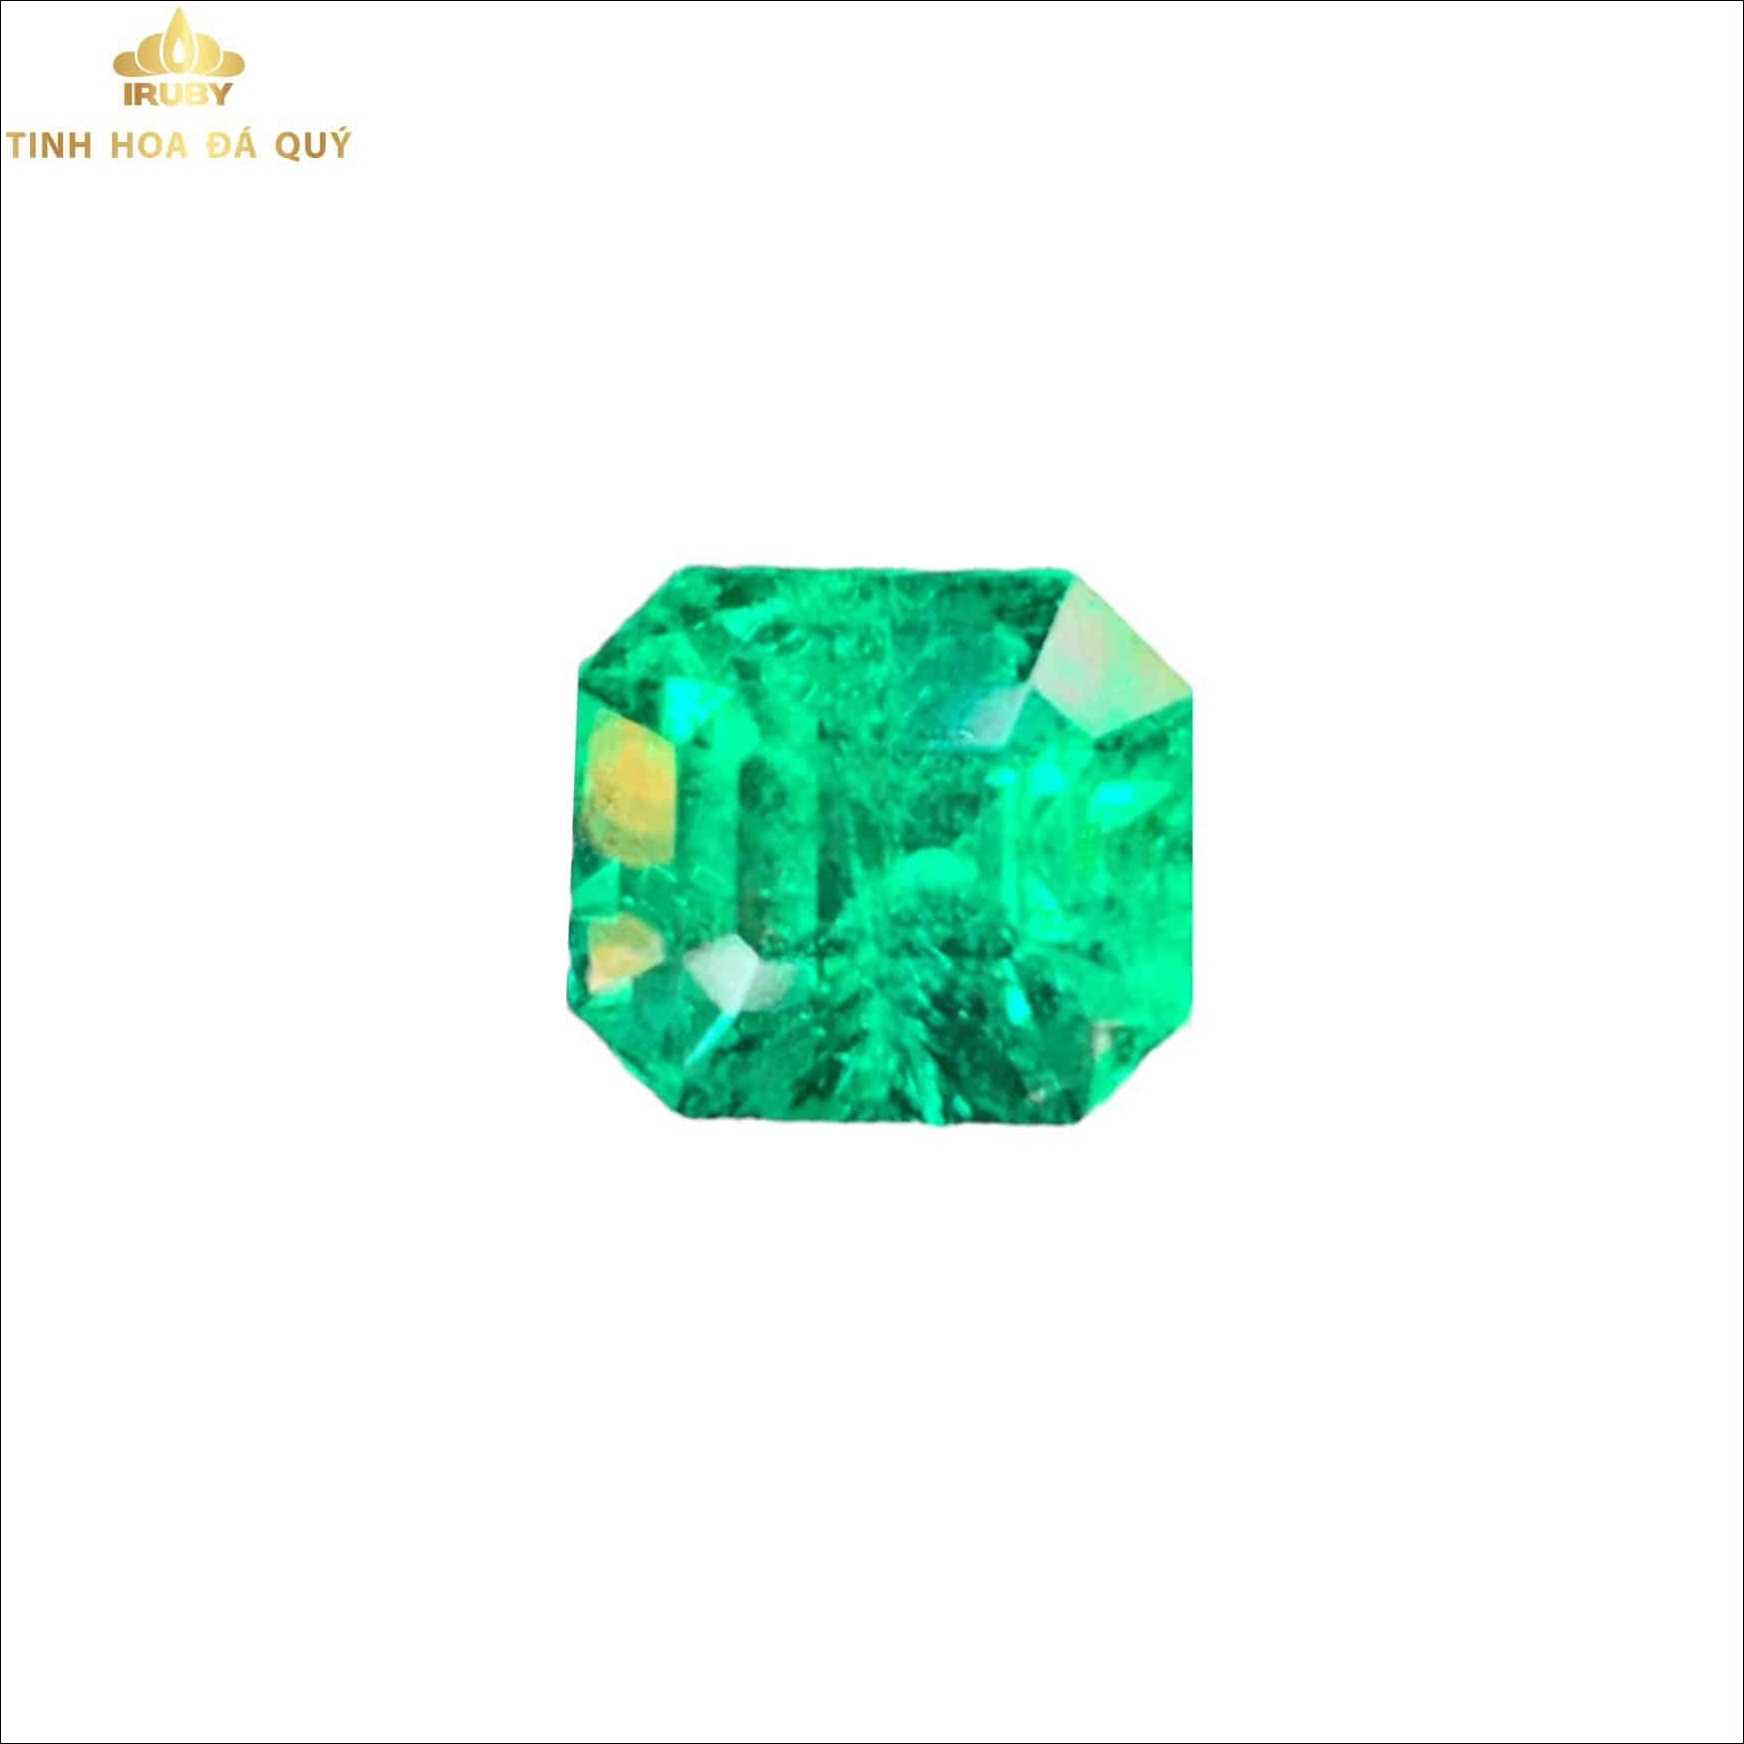 Viên Emerald tự nhiên chất lượng cao VIP 3,5ct - IREM 221035